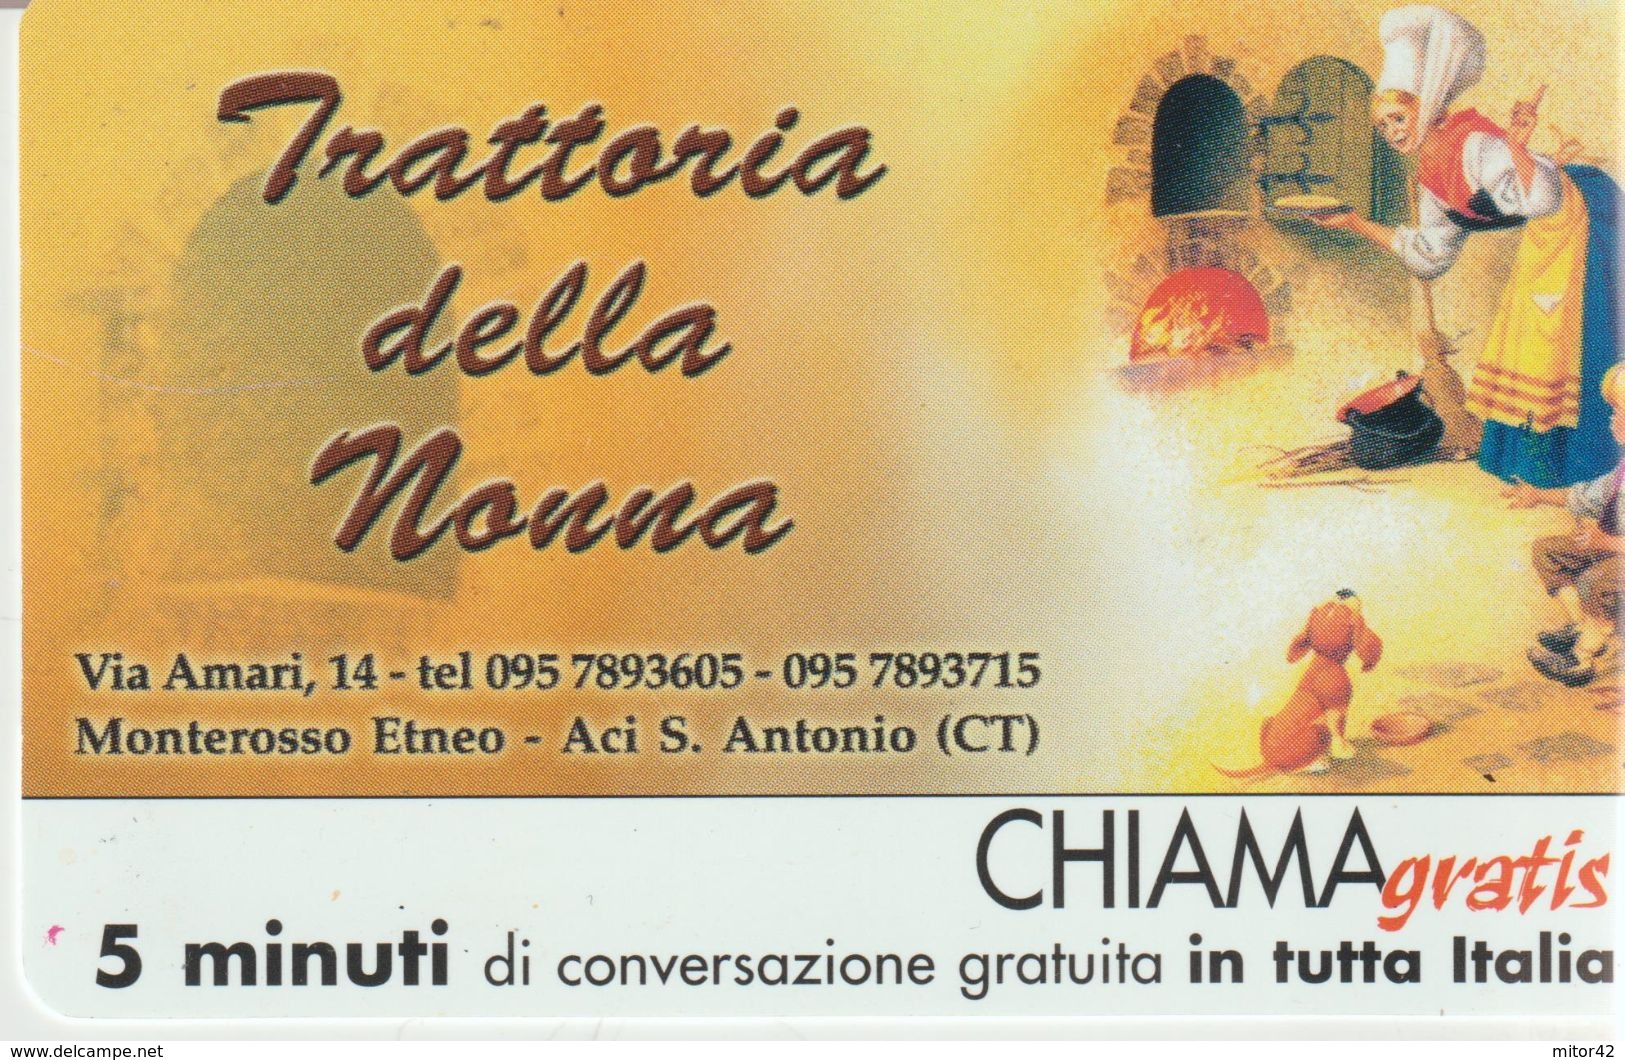 60-Chiama-gratis-Trattoria Della Nonna-Monterosso Etneo-Aci S.Antonio-Catania-Nuova - Usi Speciali